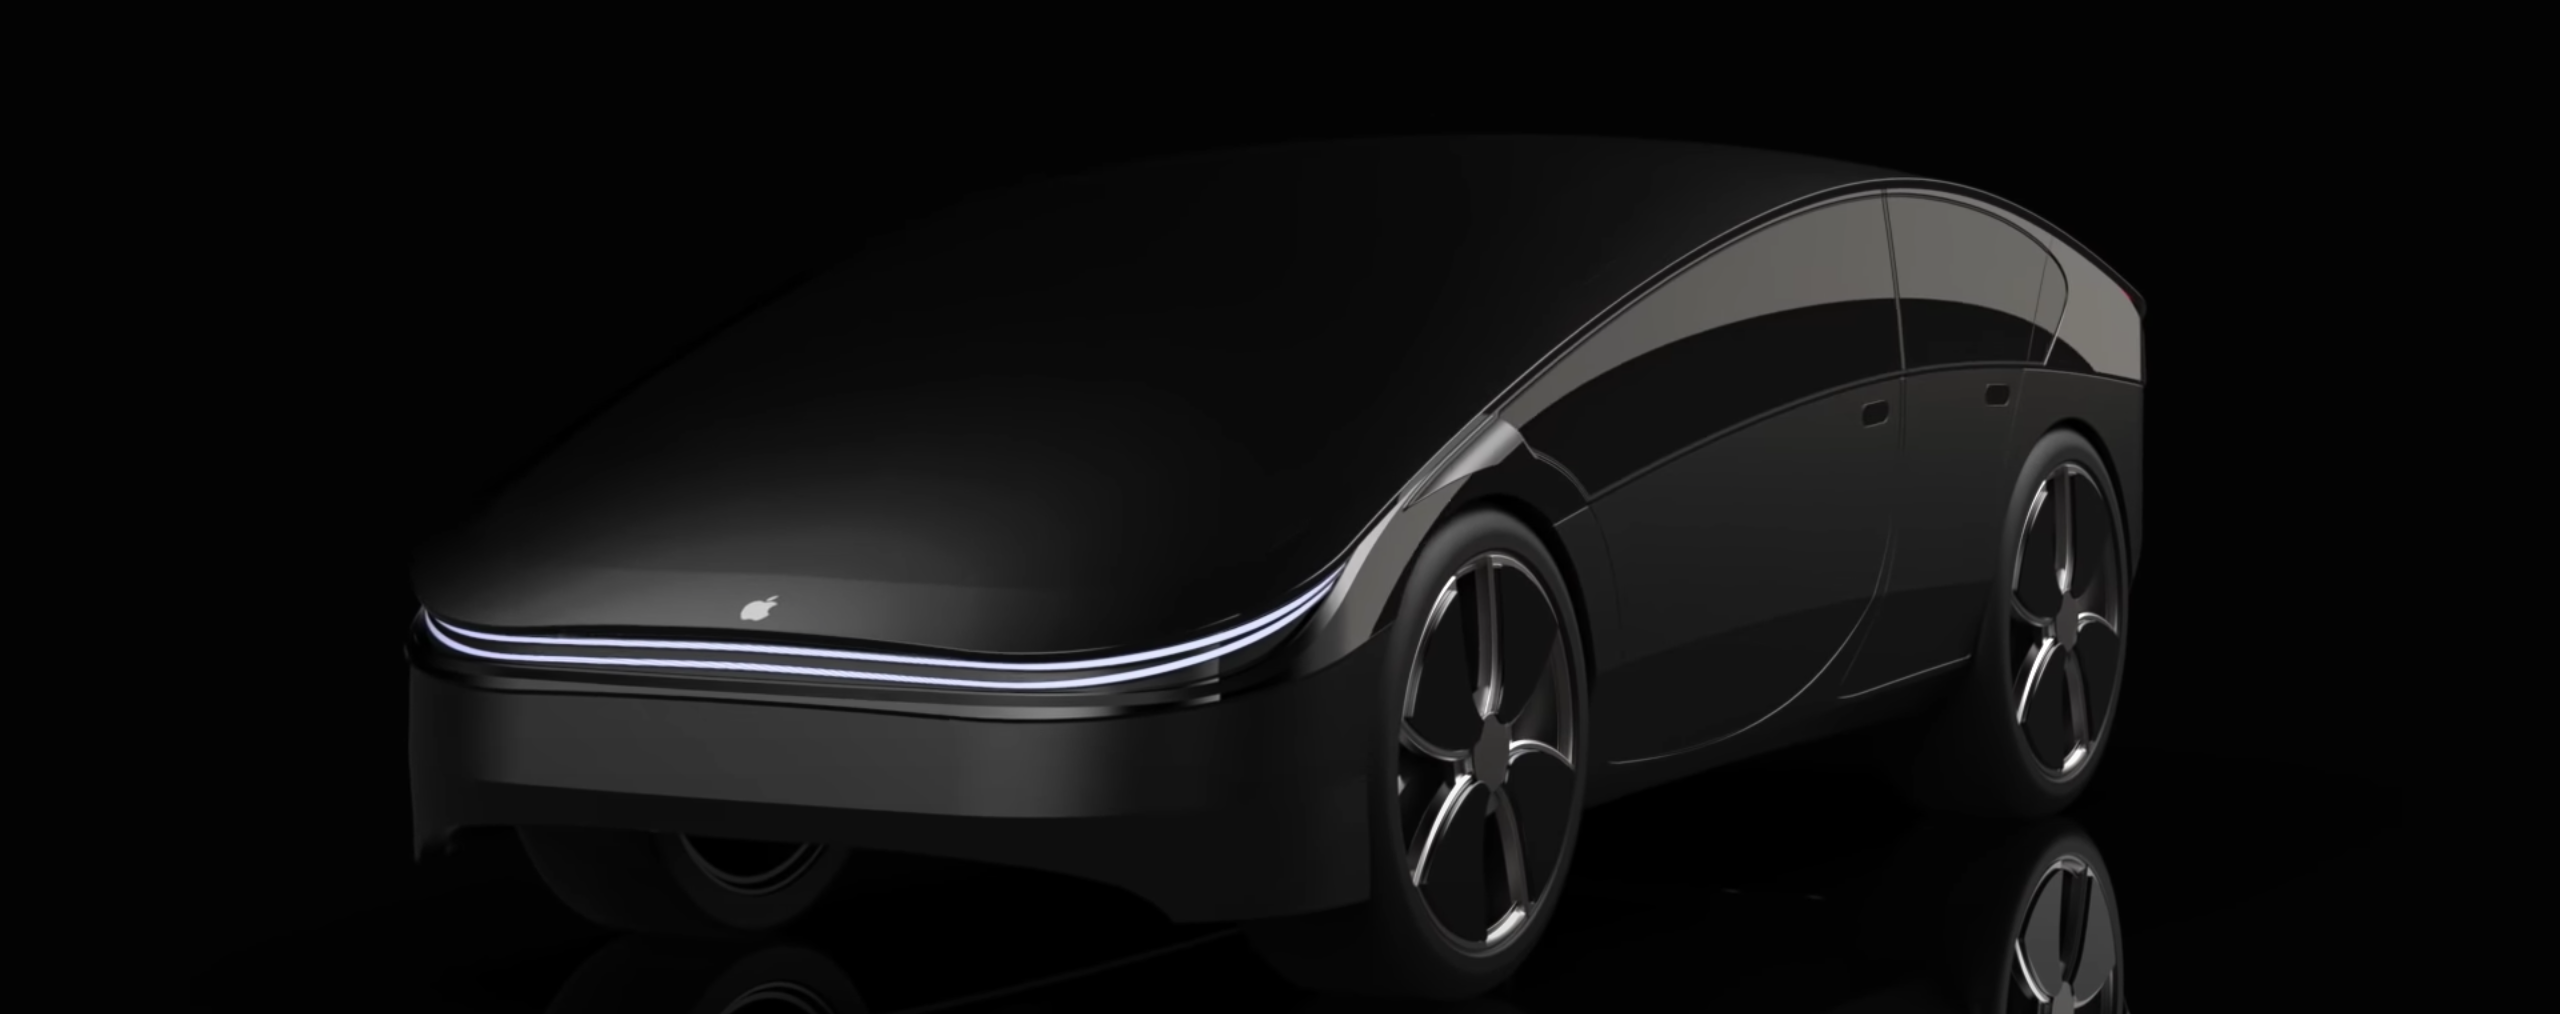 الخدمات 8 يناير 2021
Apple في محادثات مع هيونداي لتطوير Apple السيارات